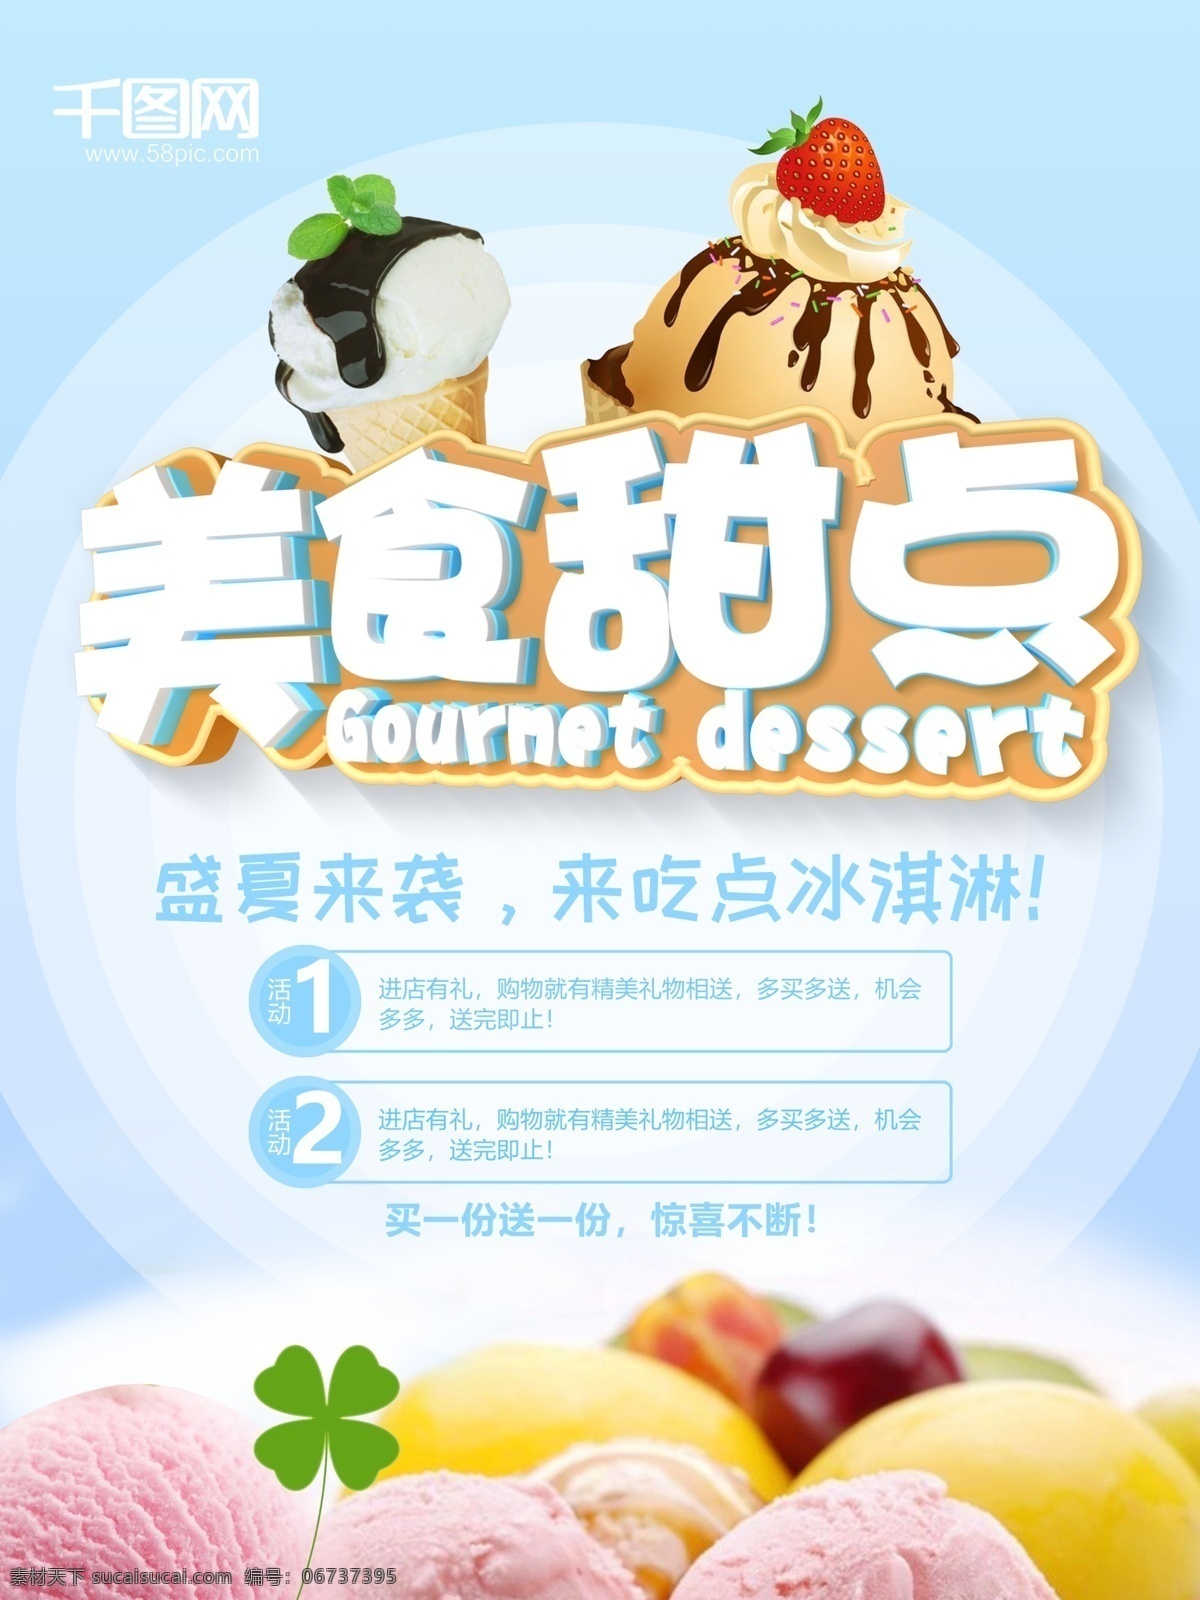 c4d 小 清新 美食 甜点 商业促销 海报 小清新 促销海报